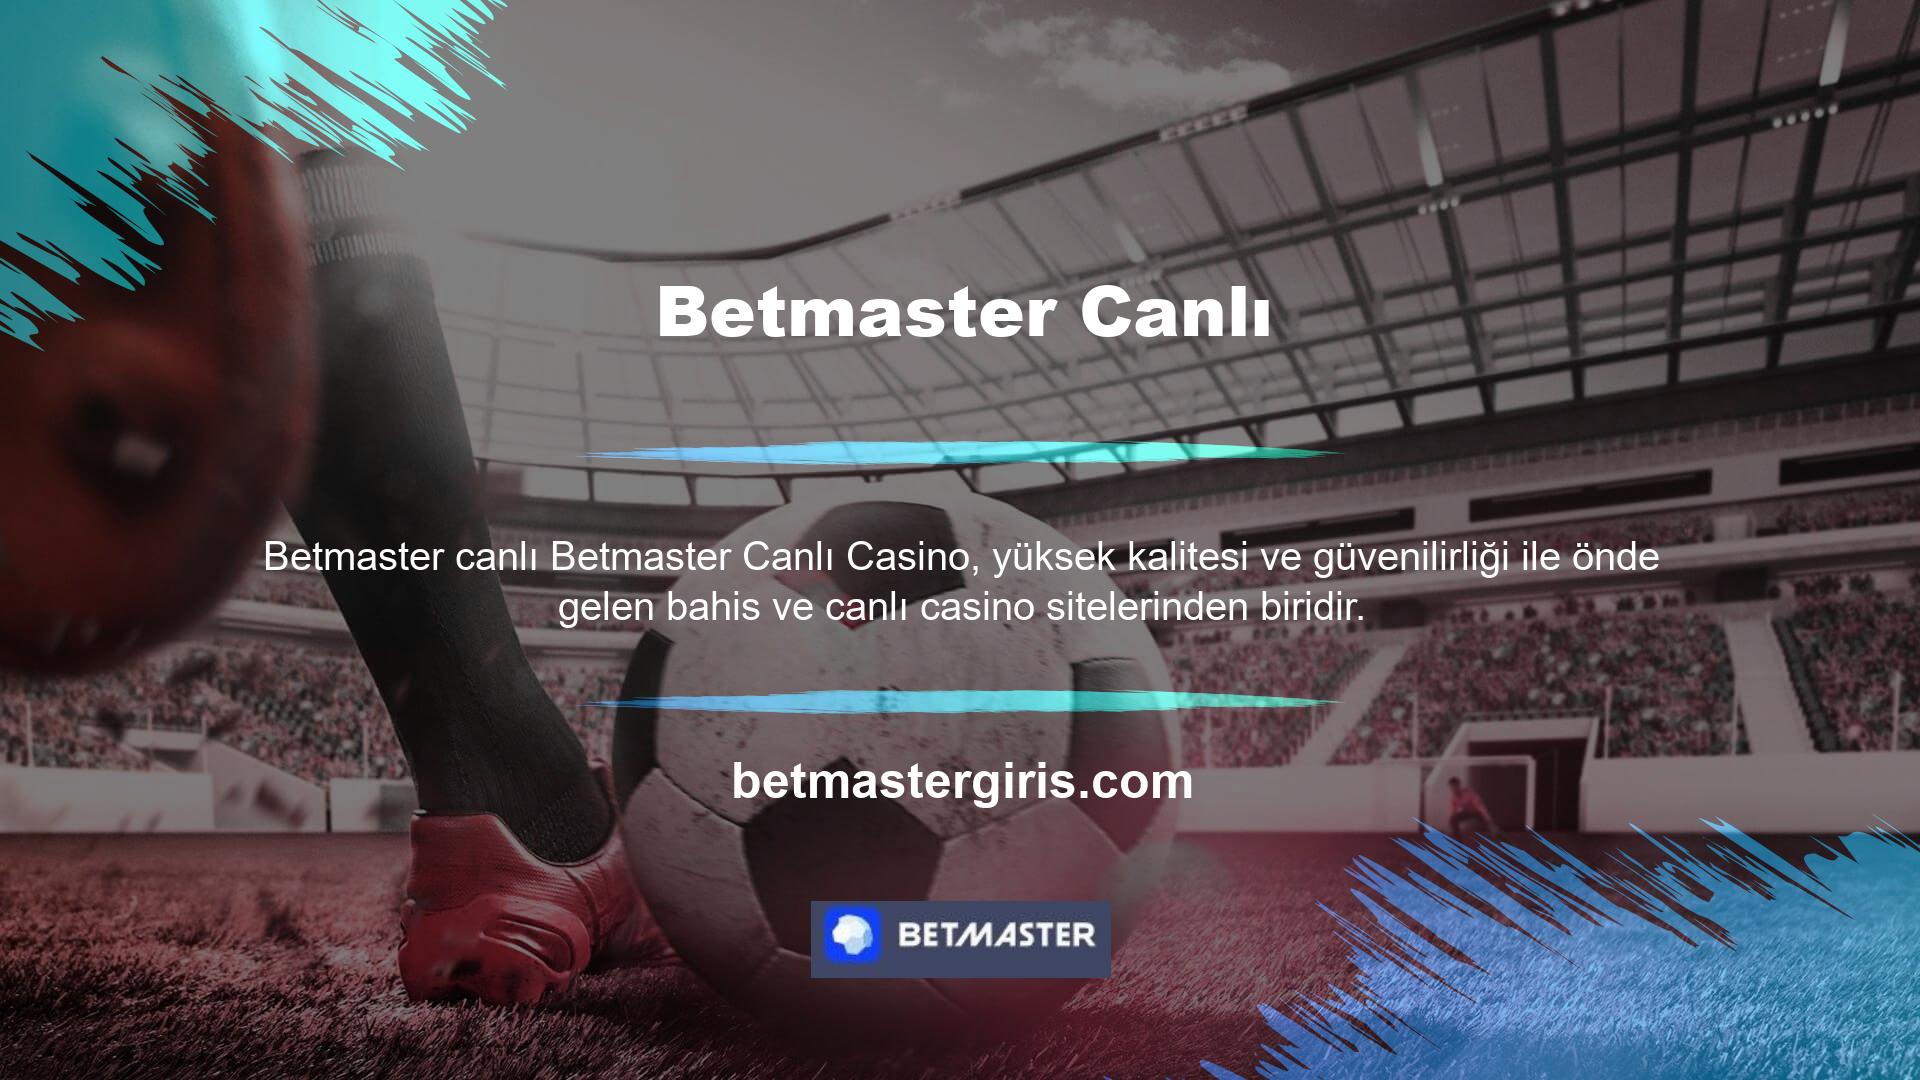 Betmaster canlı casino oyunları, çeşitli oyunlar oynamak isteyenler için çeşitli oyunlar içermektedir